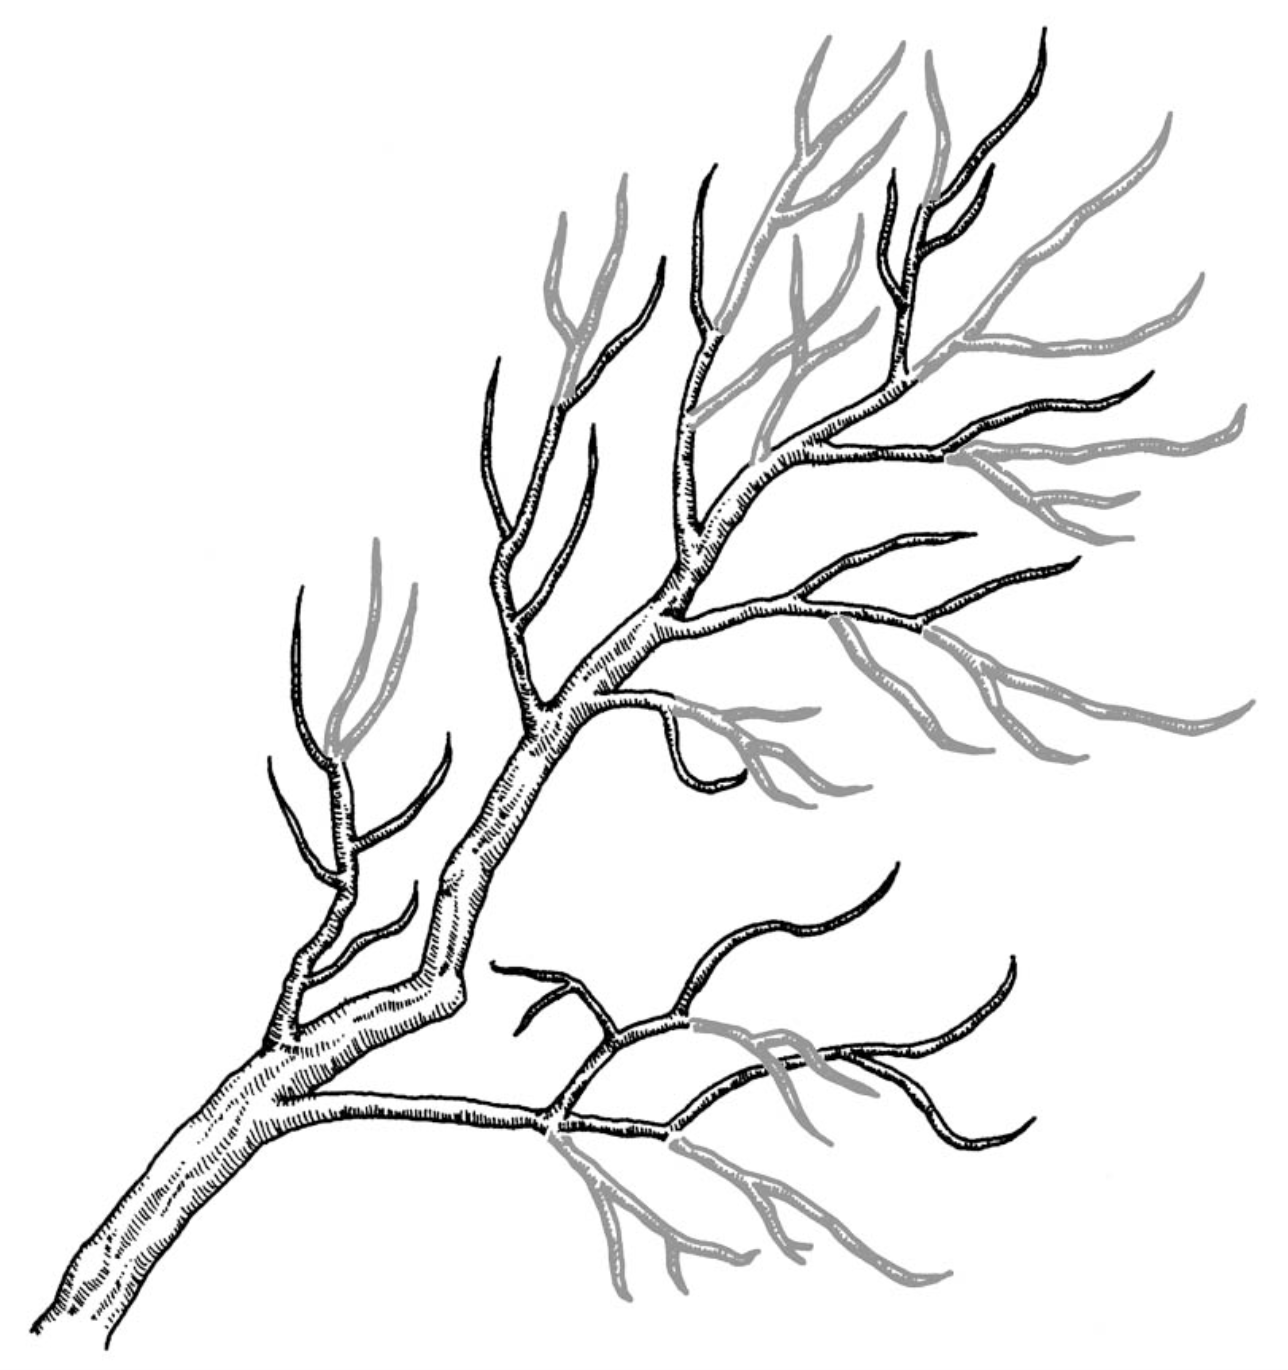 a well pruned-branch